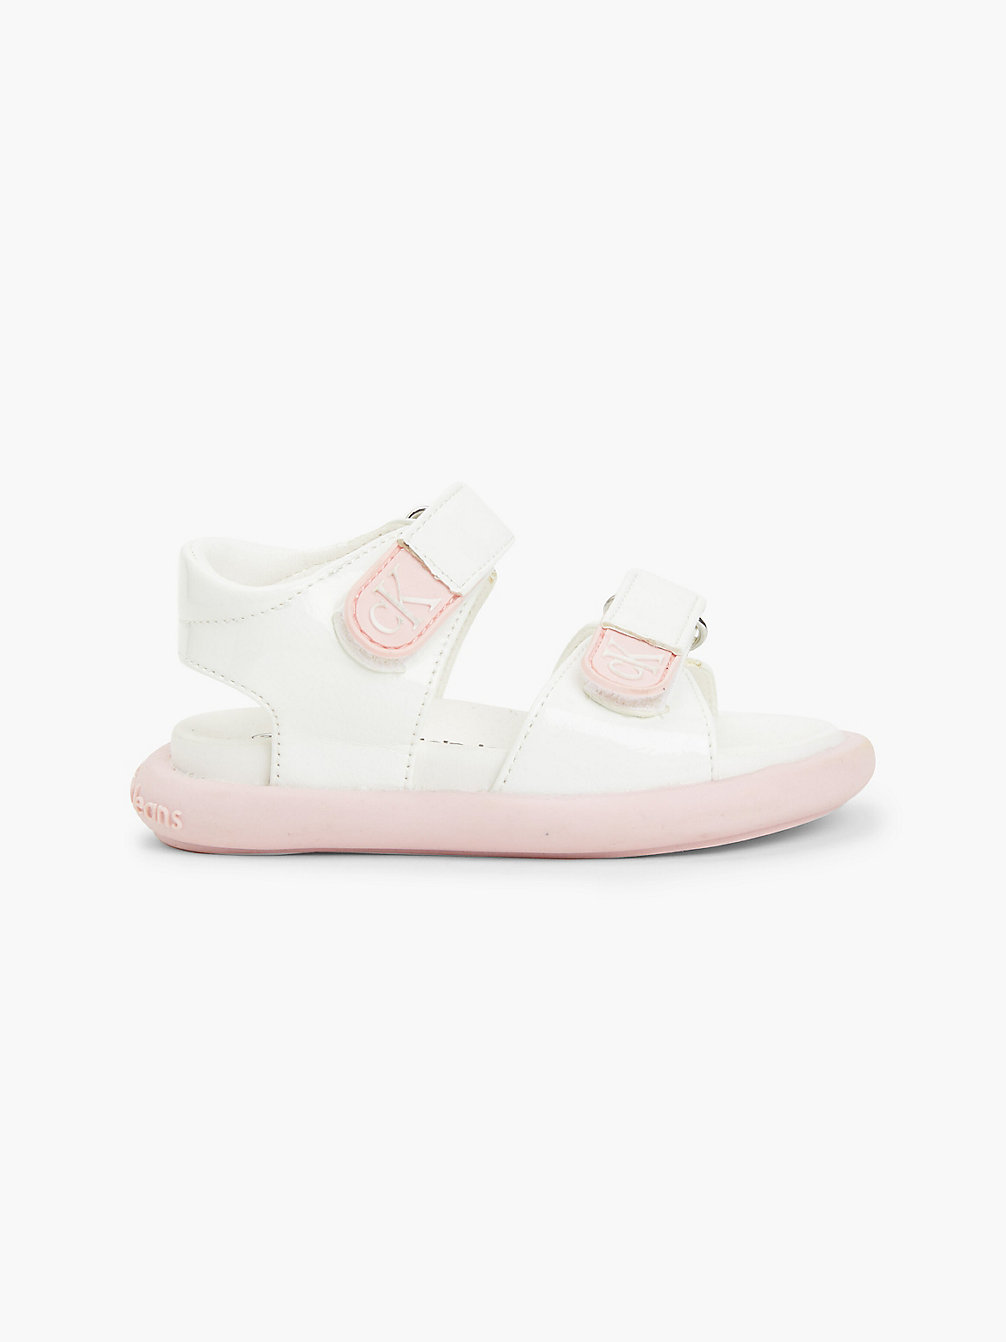 WHITE/PINK Logo Sandals undefined girls Calvin Klein